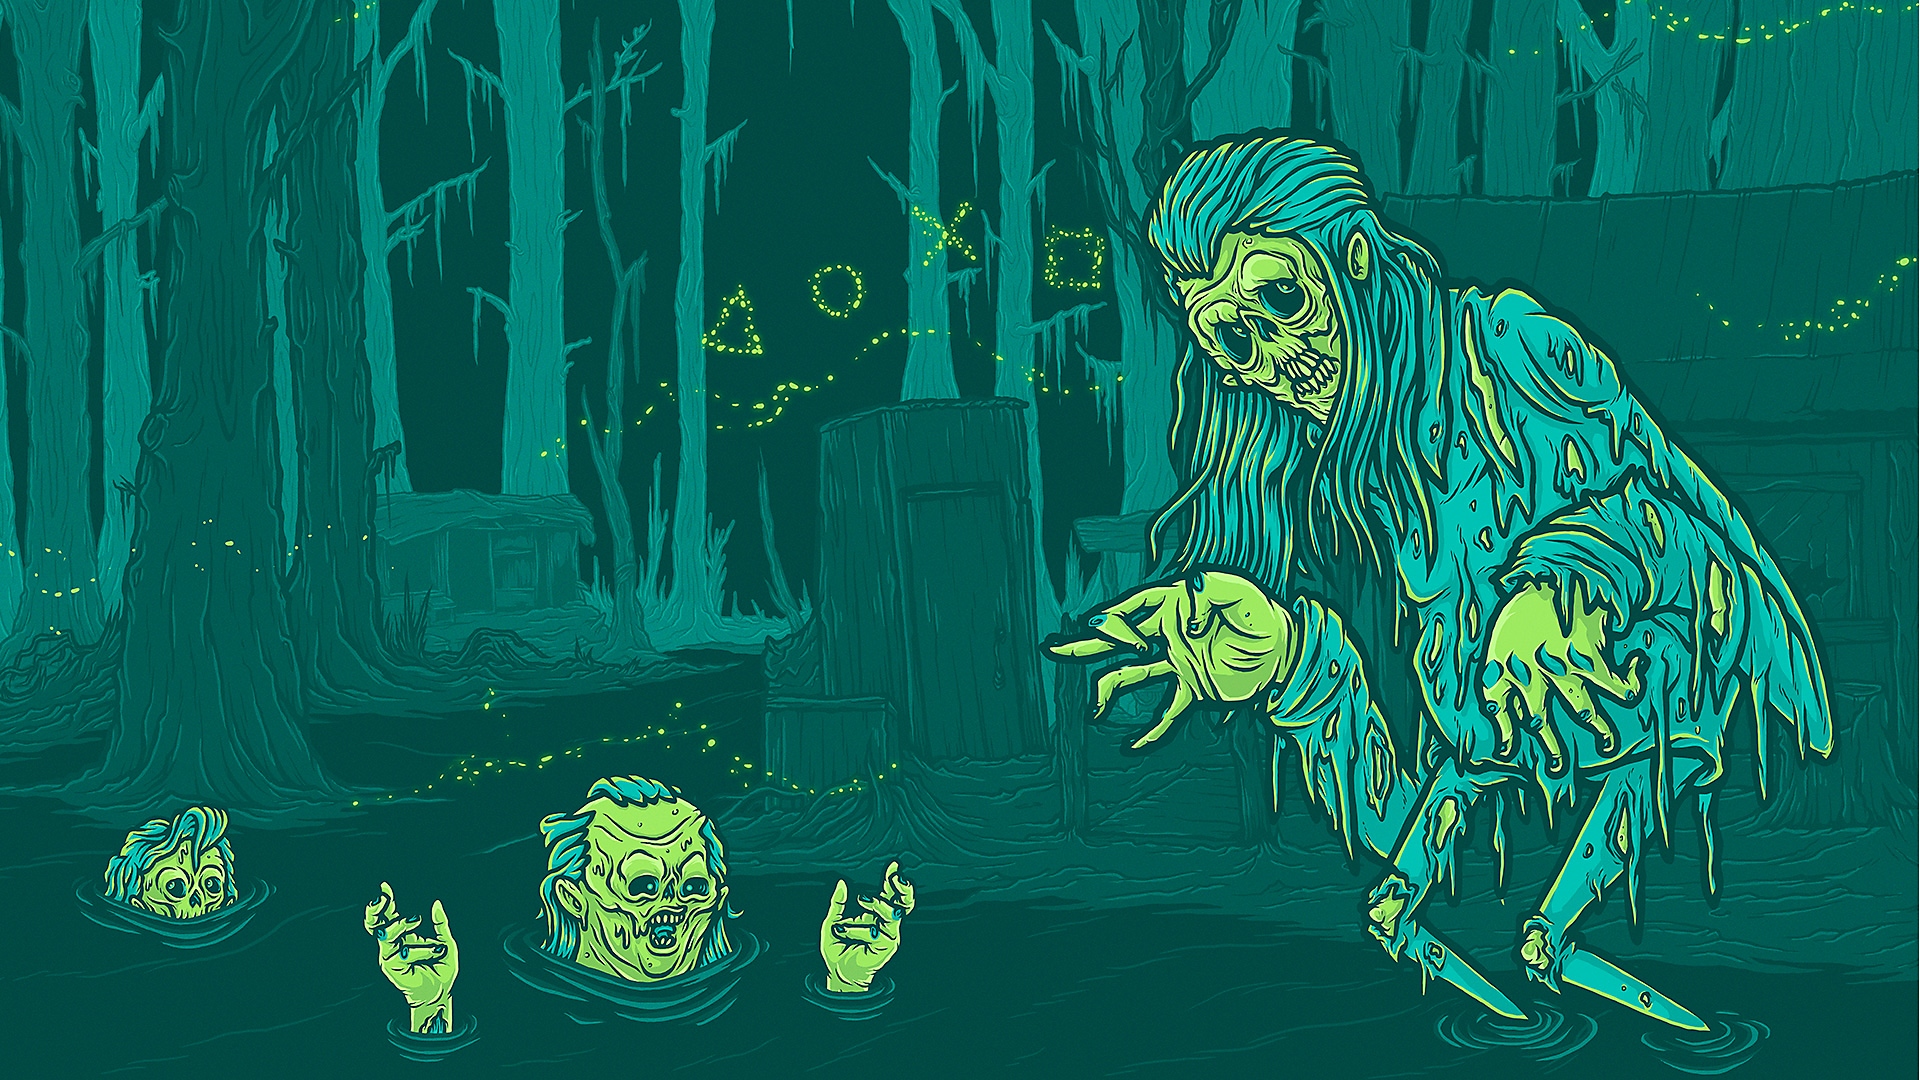 Arte original - Os melhores jogos de terror para PS4 e PS5 com renderização estilizada de diversos ghouls a surgir de um pântano.